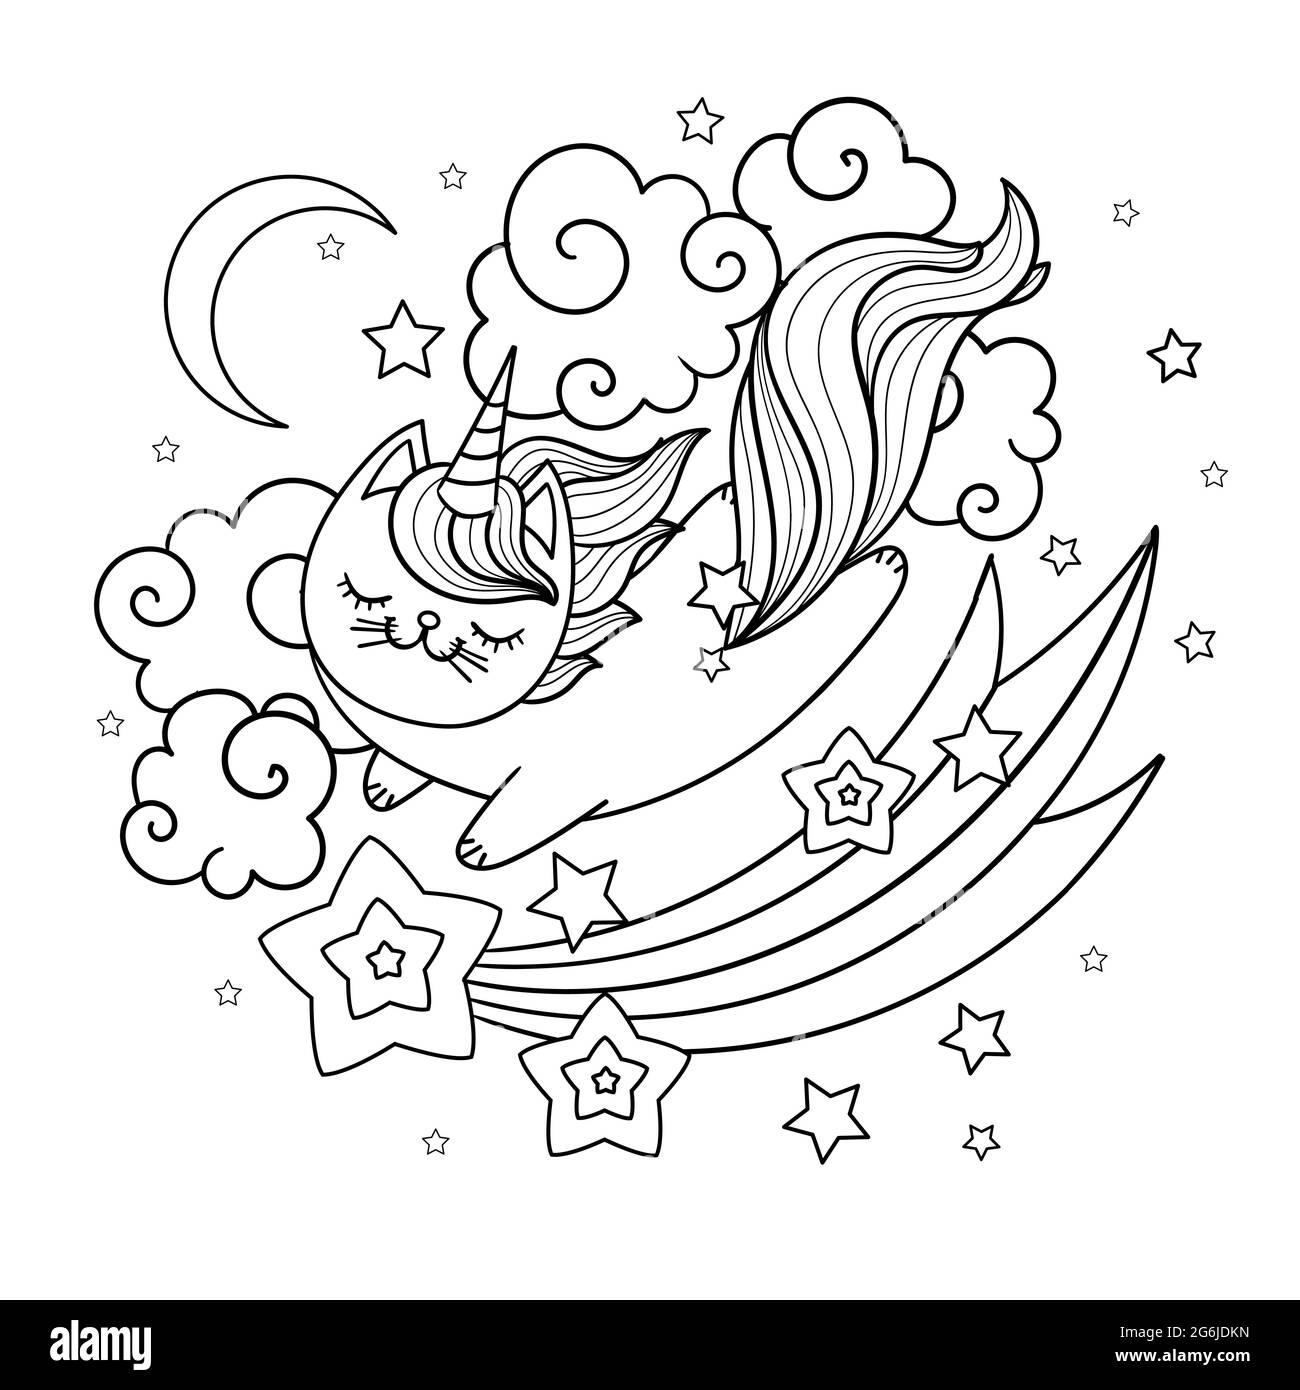 Un adorable chat licorne vole dans le ciel. Image linéaire noir et blanc. Illustration vectorielle plate. Illustration de Vecteur